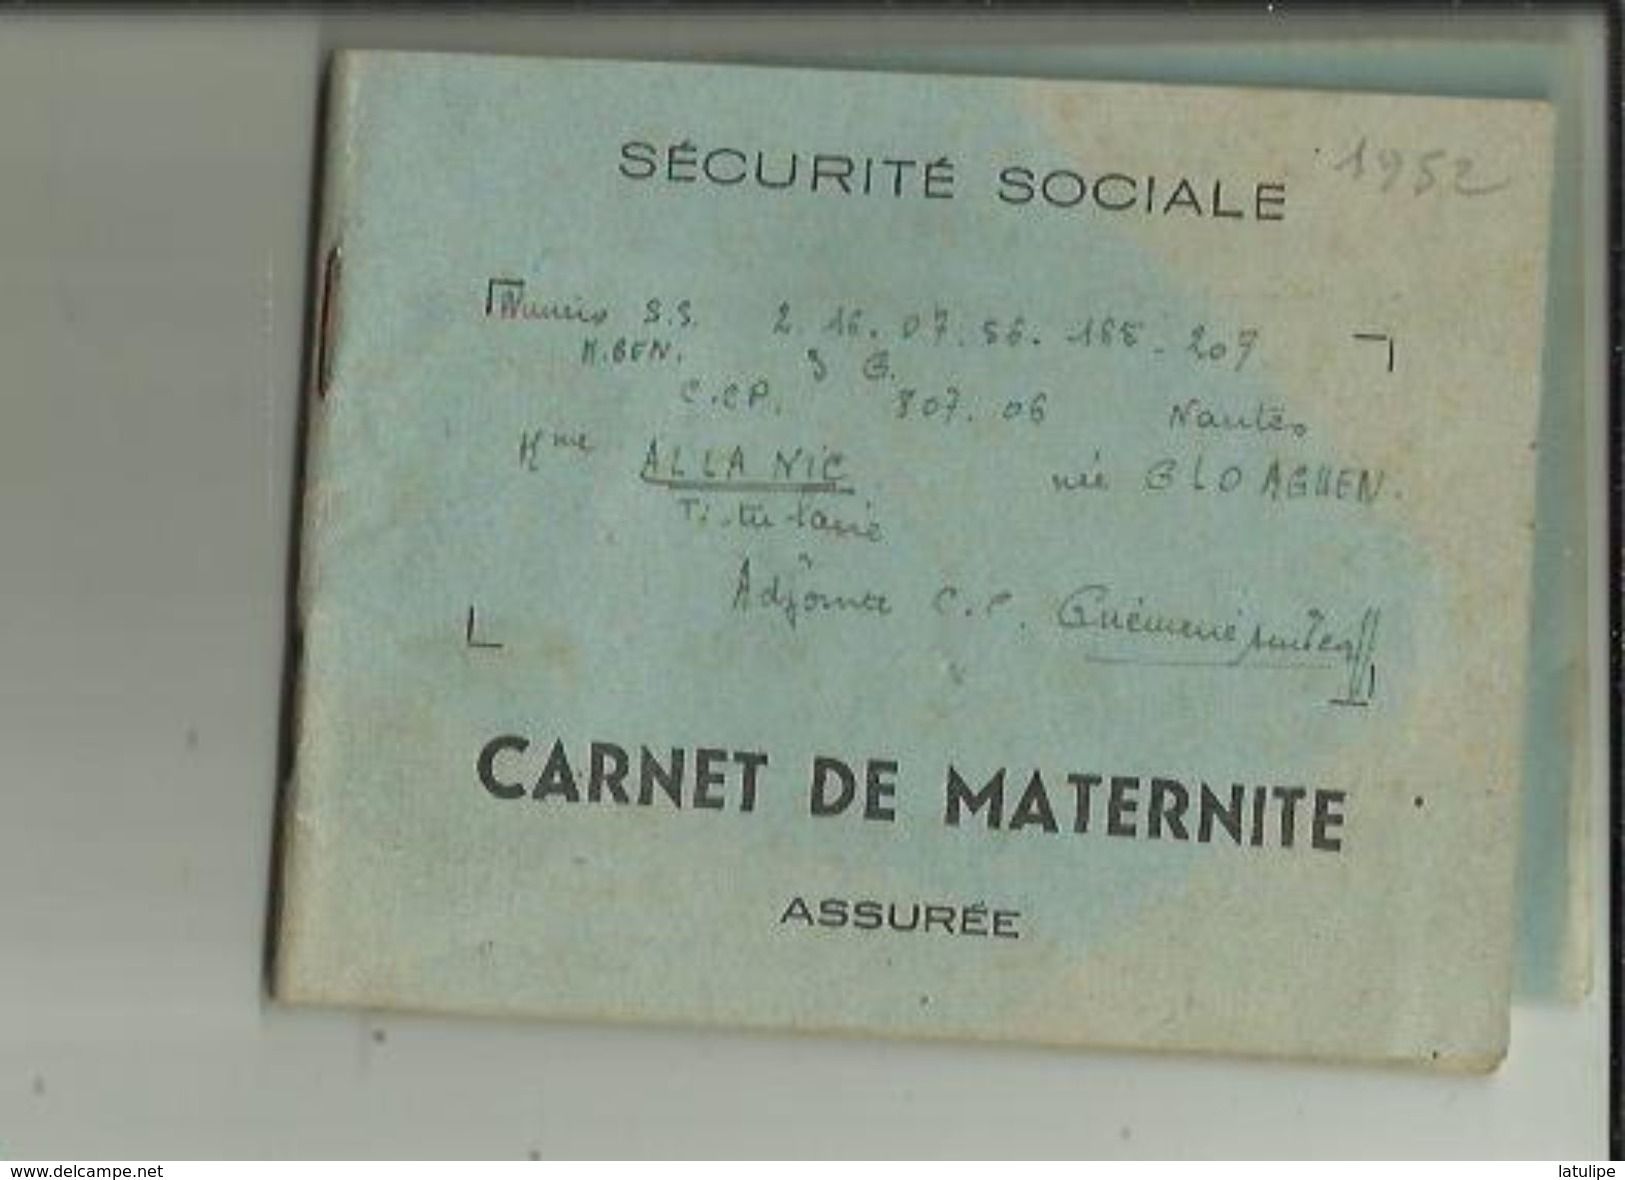 Carnet De Maternité De S S -(Assurée)  De Mme ALLANIC  Née GLOAGUEN _Institutrice Adjointe A GUEMENE Dur SCORFF En 1952 - Equipo Dental Y Médica